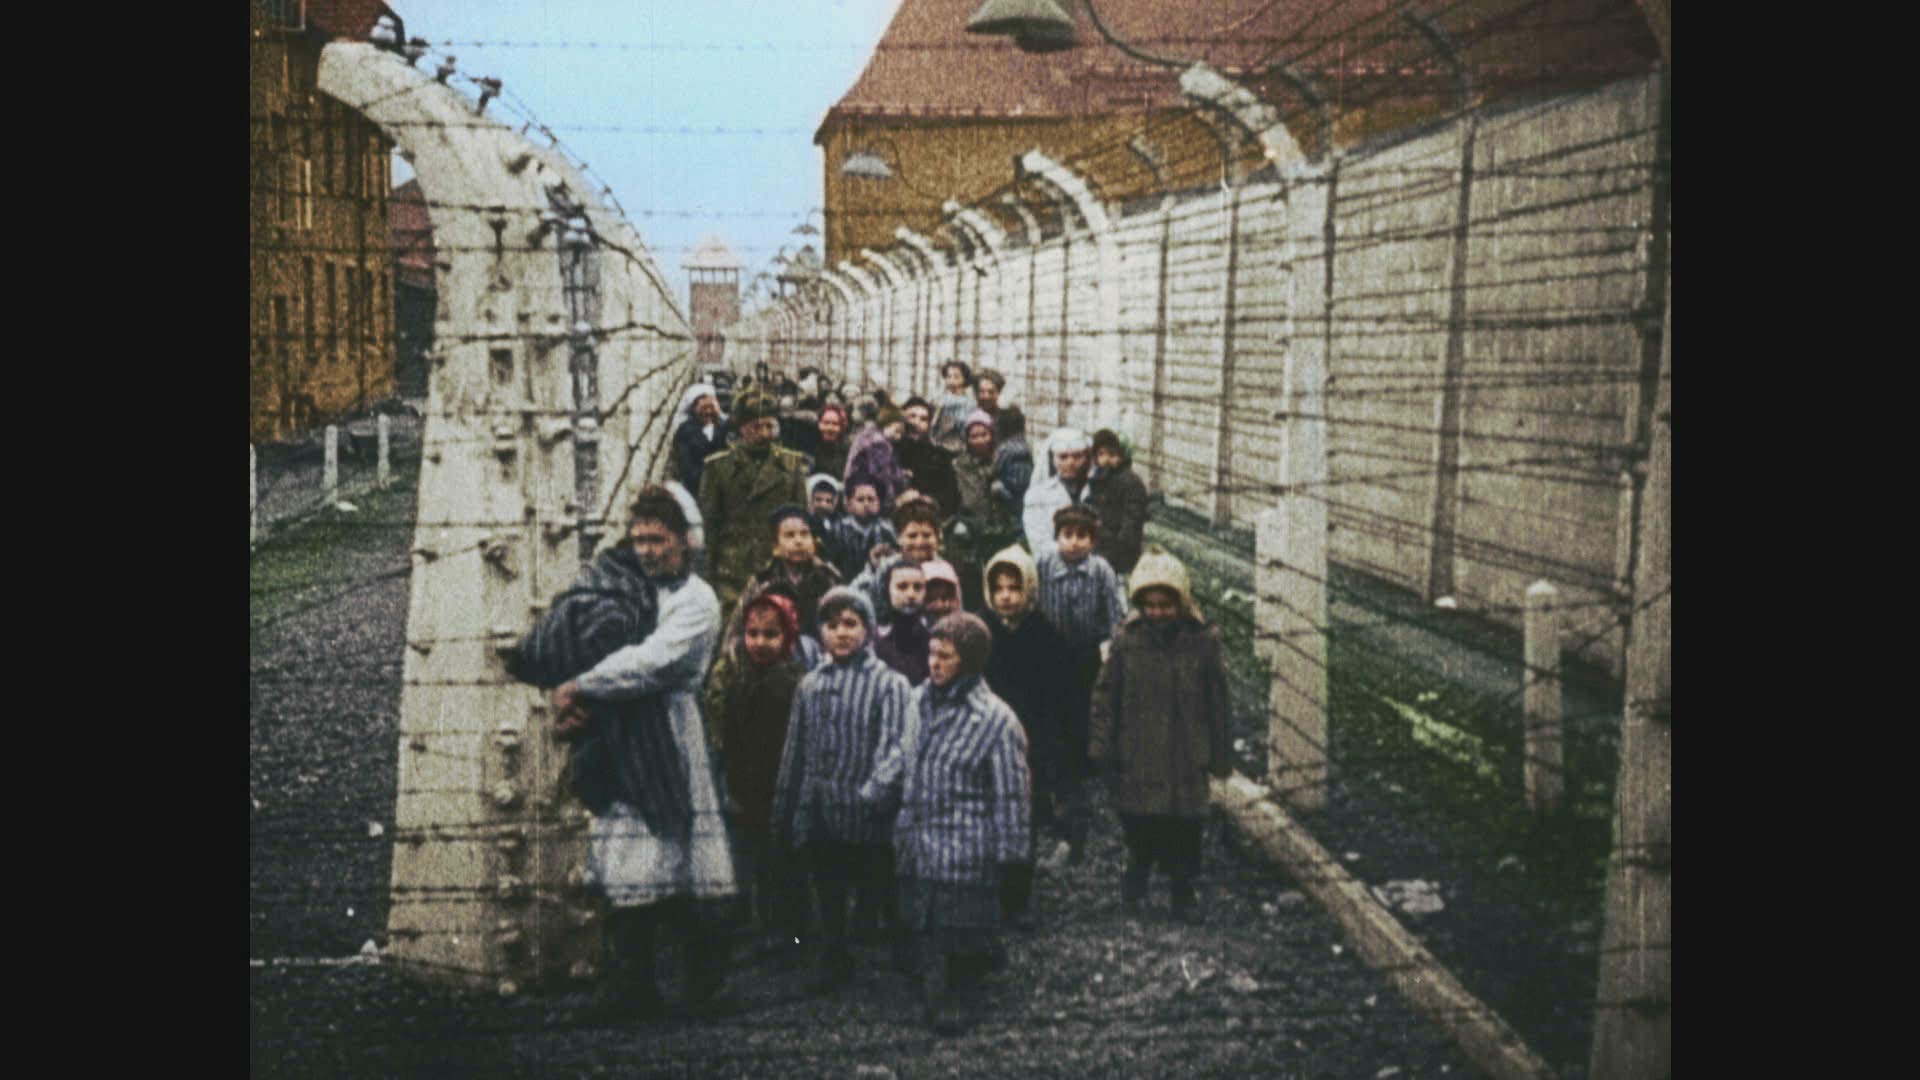 Auschwitz Untold [DVD]